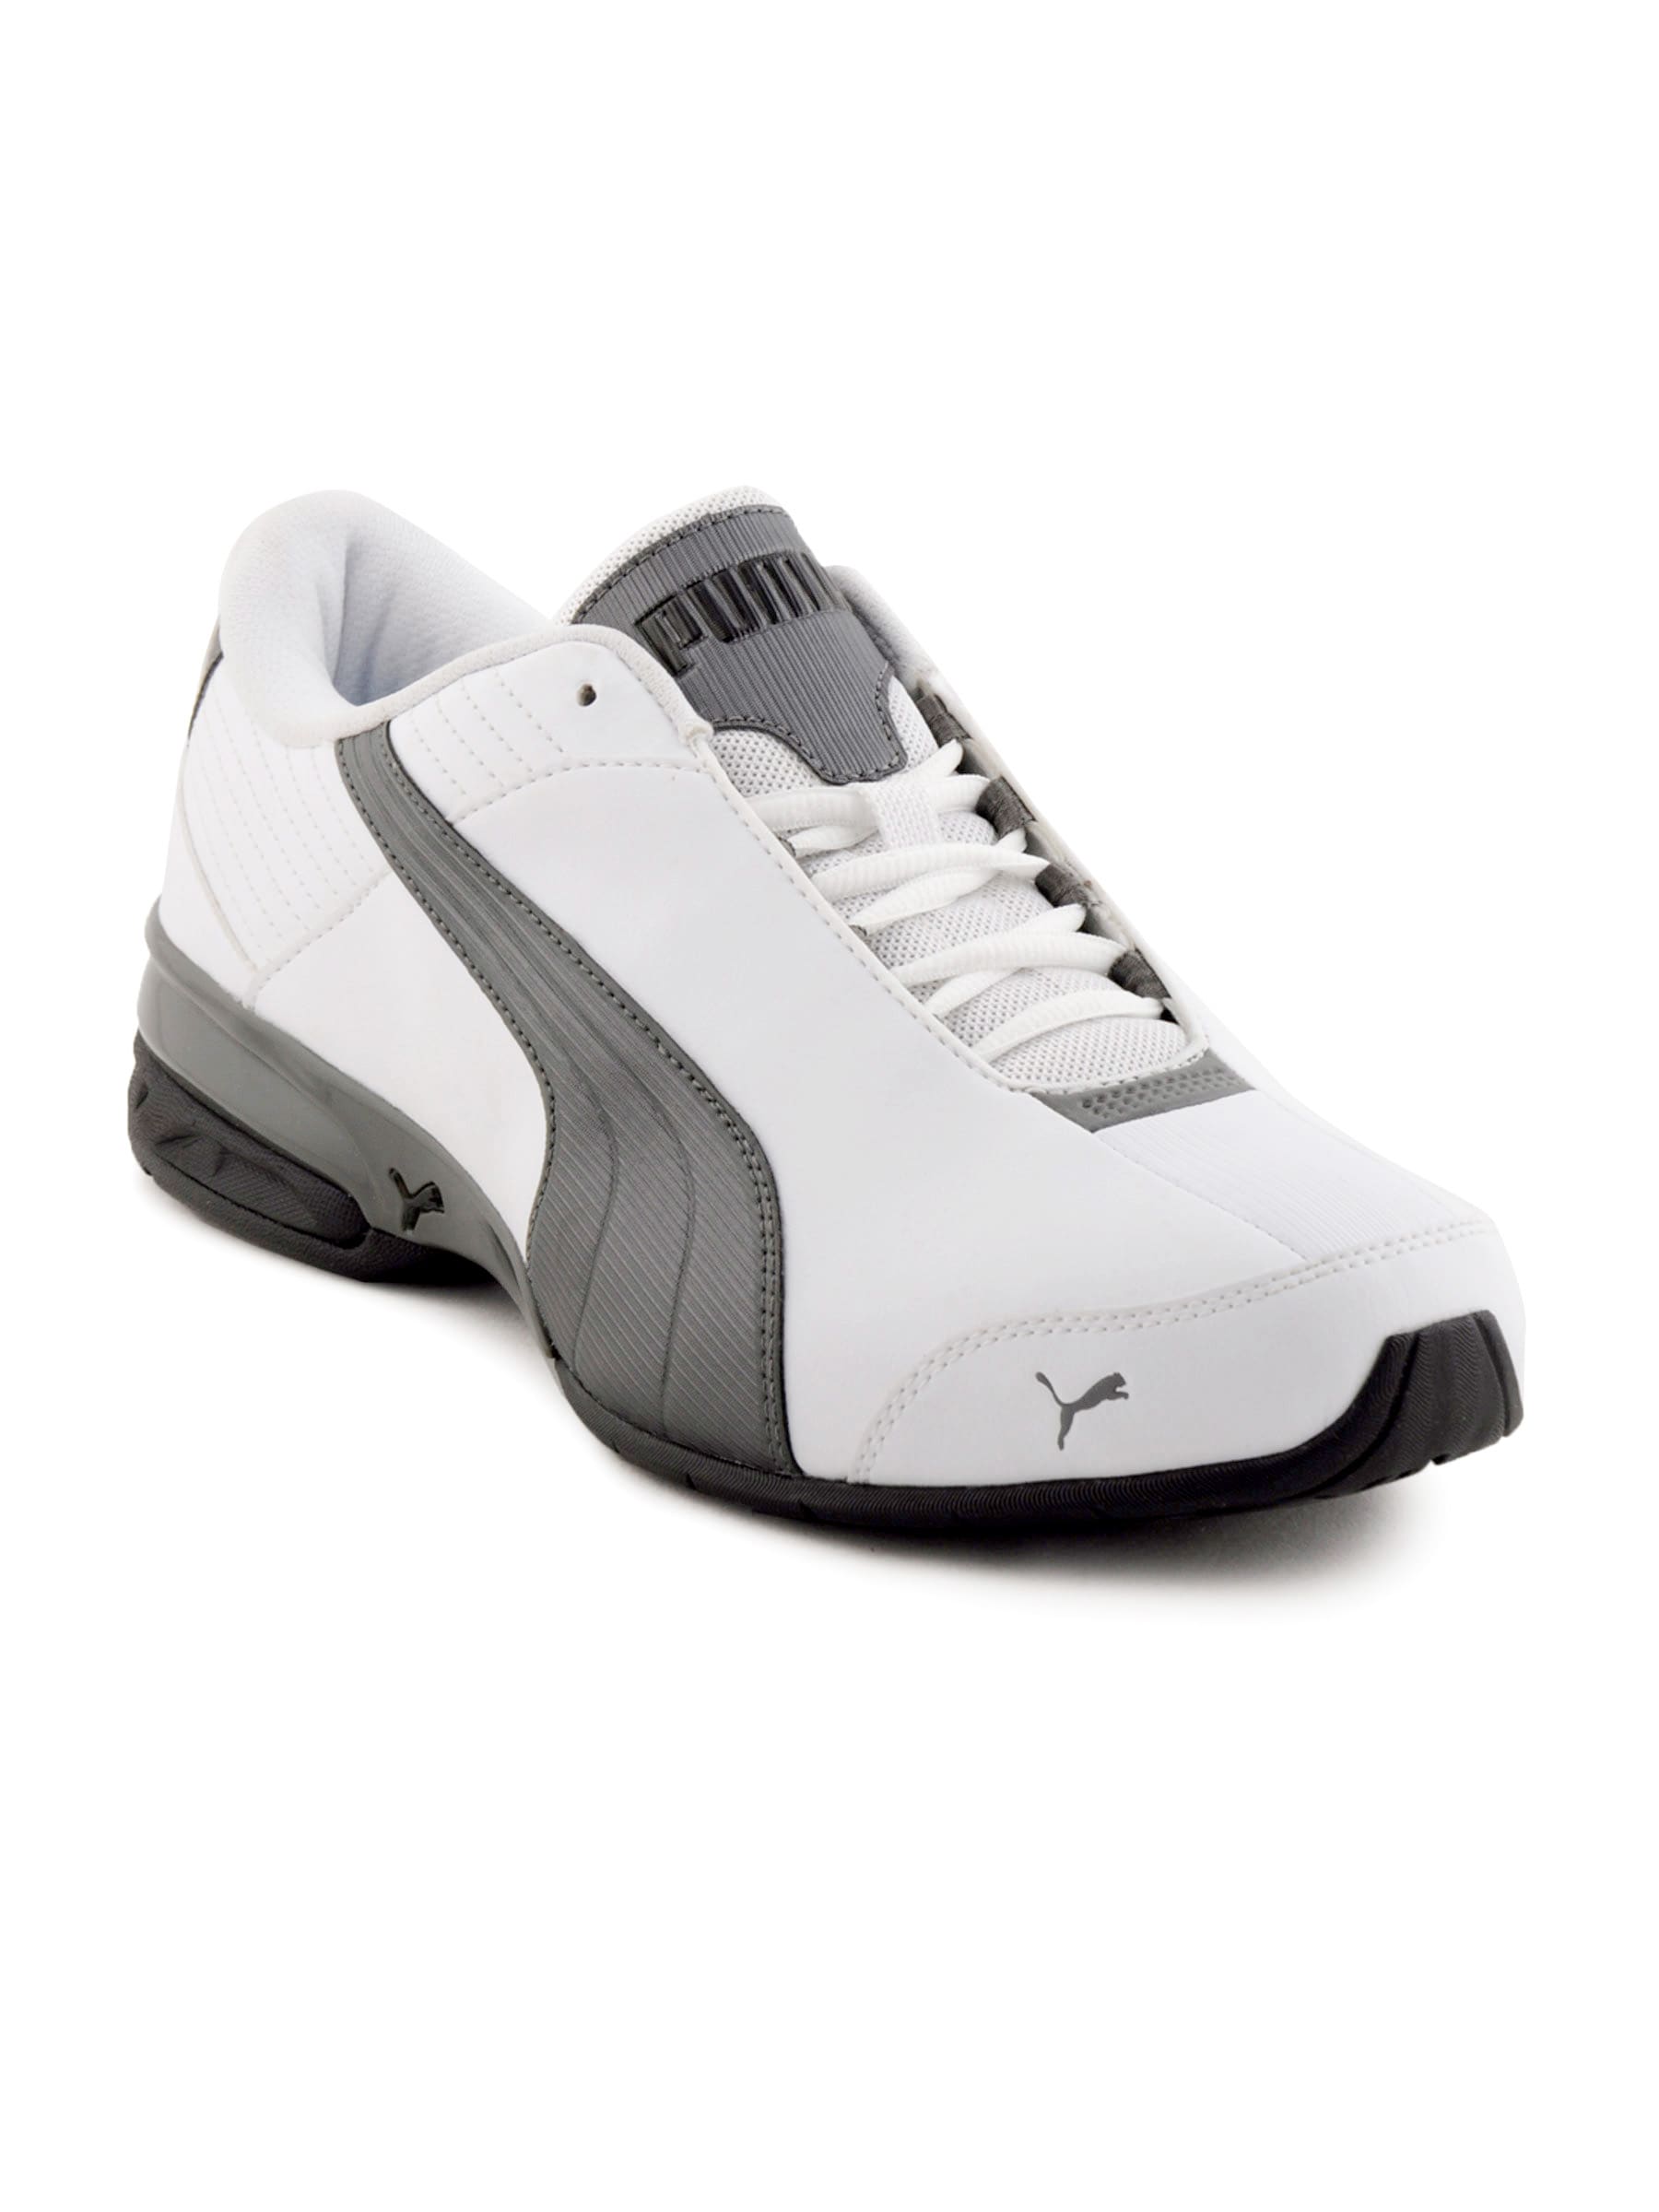 Puma Men Super Elevate White Casual Shoes